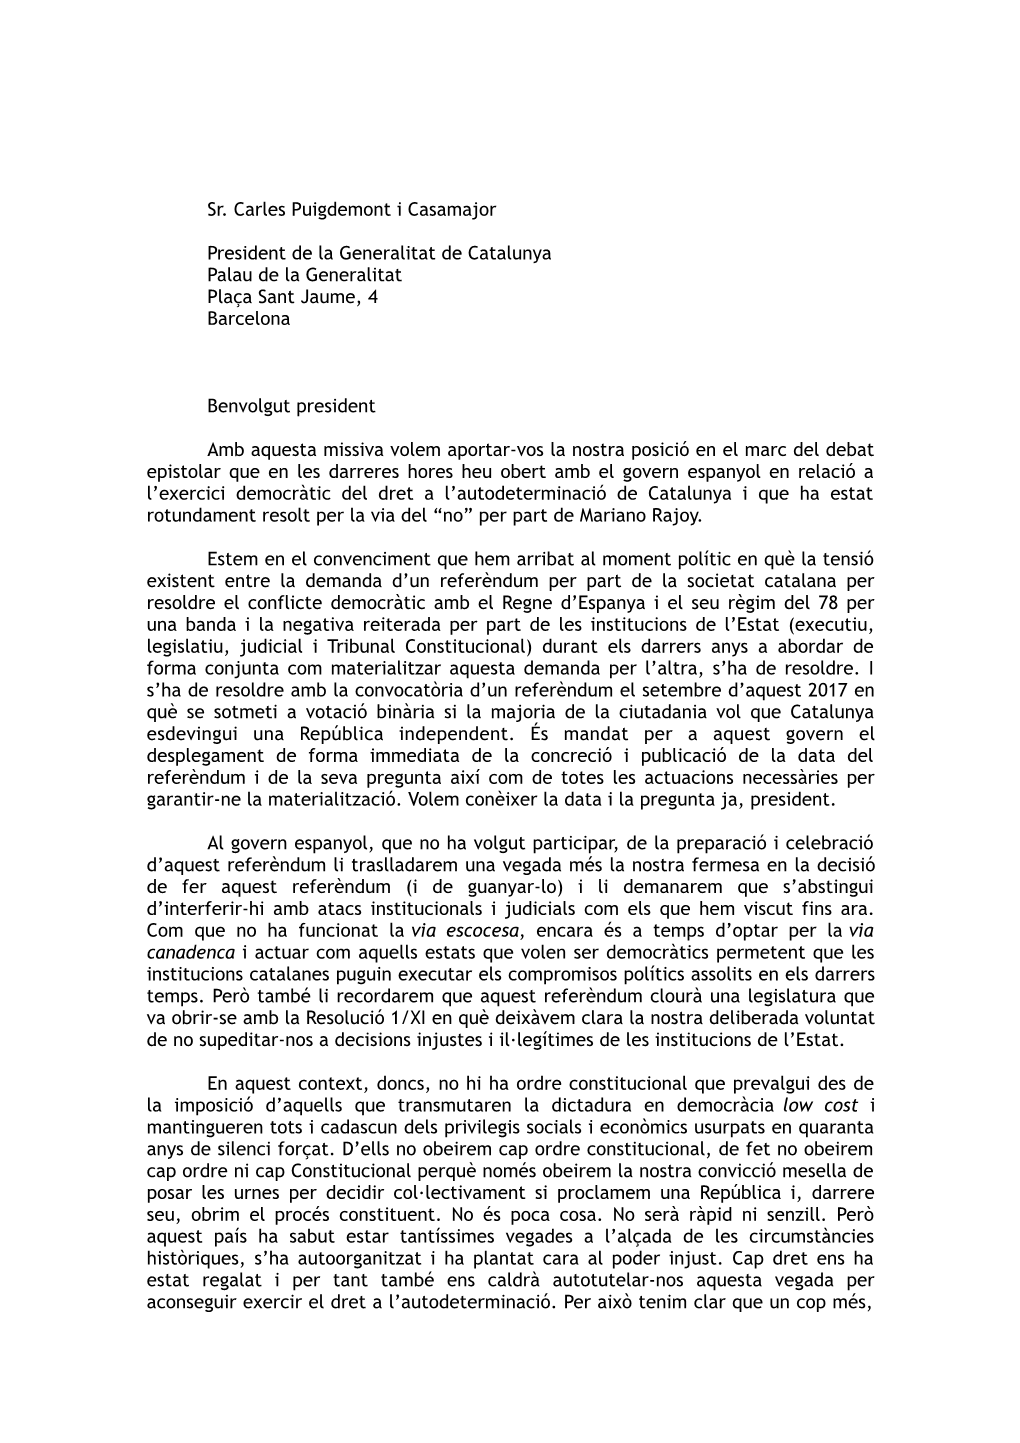 Sr. Carles Puigdemont I Casamajor President De La Generalitat De